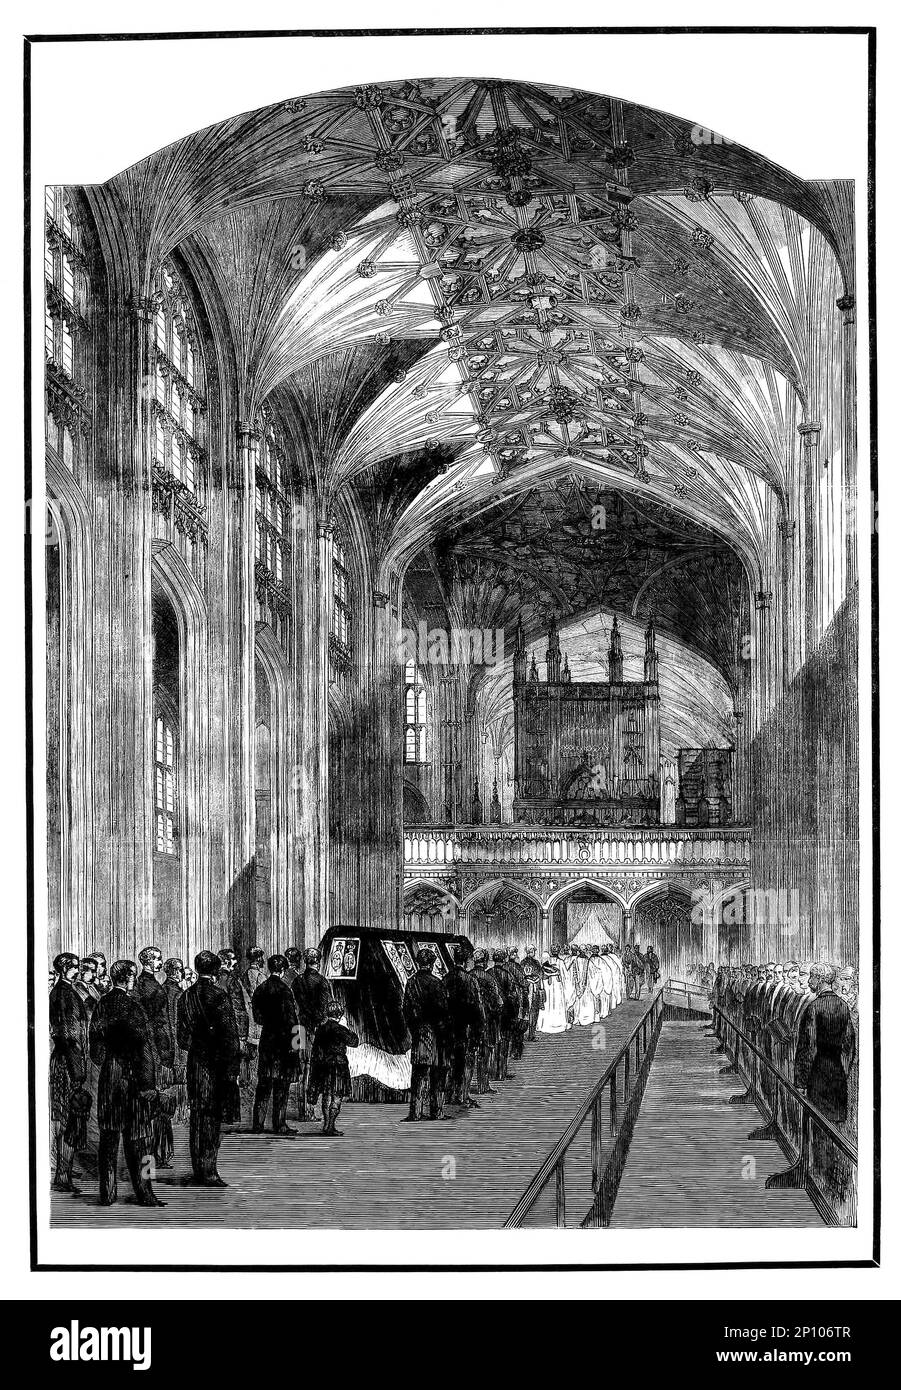 Die königliche Prozession im Schiff der St. George's Chapel in Windsor Castle, nach dem frühen Tod des Typhus von Prinz Albert von Sachsen-Coburg und Gotha (1819-1861), Gemahl des britischen Monarchen als Ehemann von Königin Victoria. Stockfoto